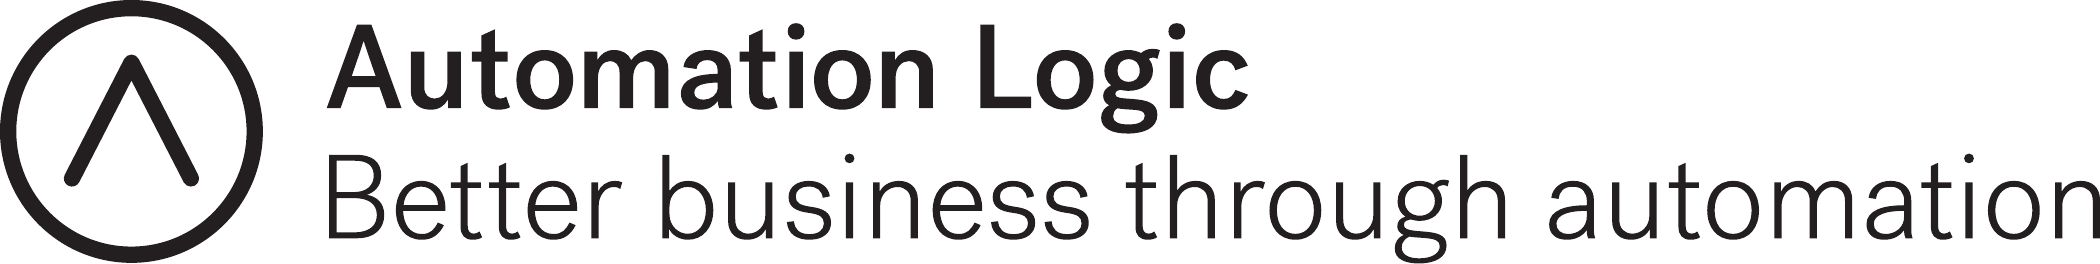 Automation Logic logo